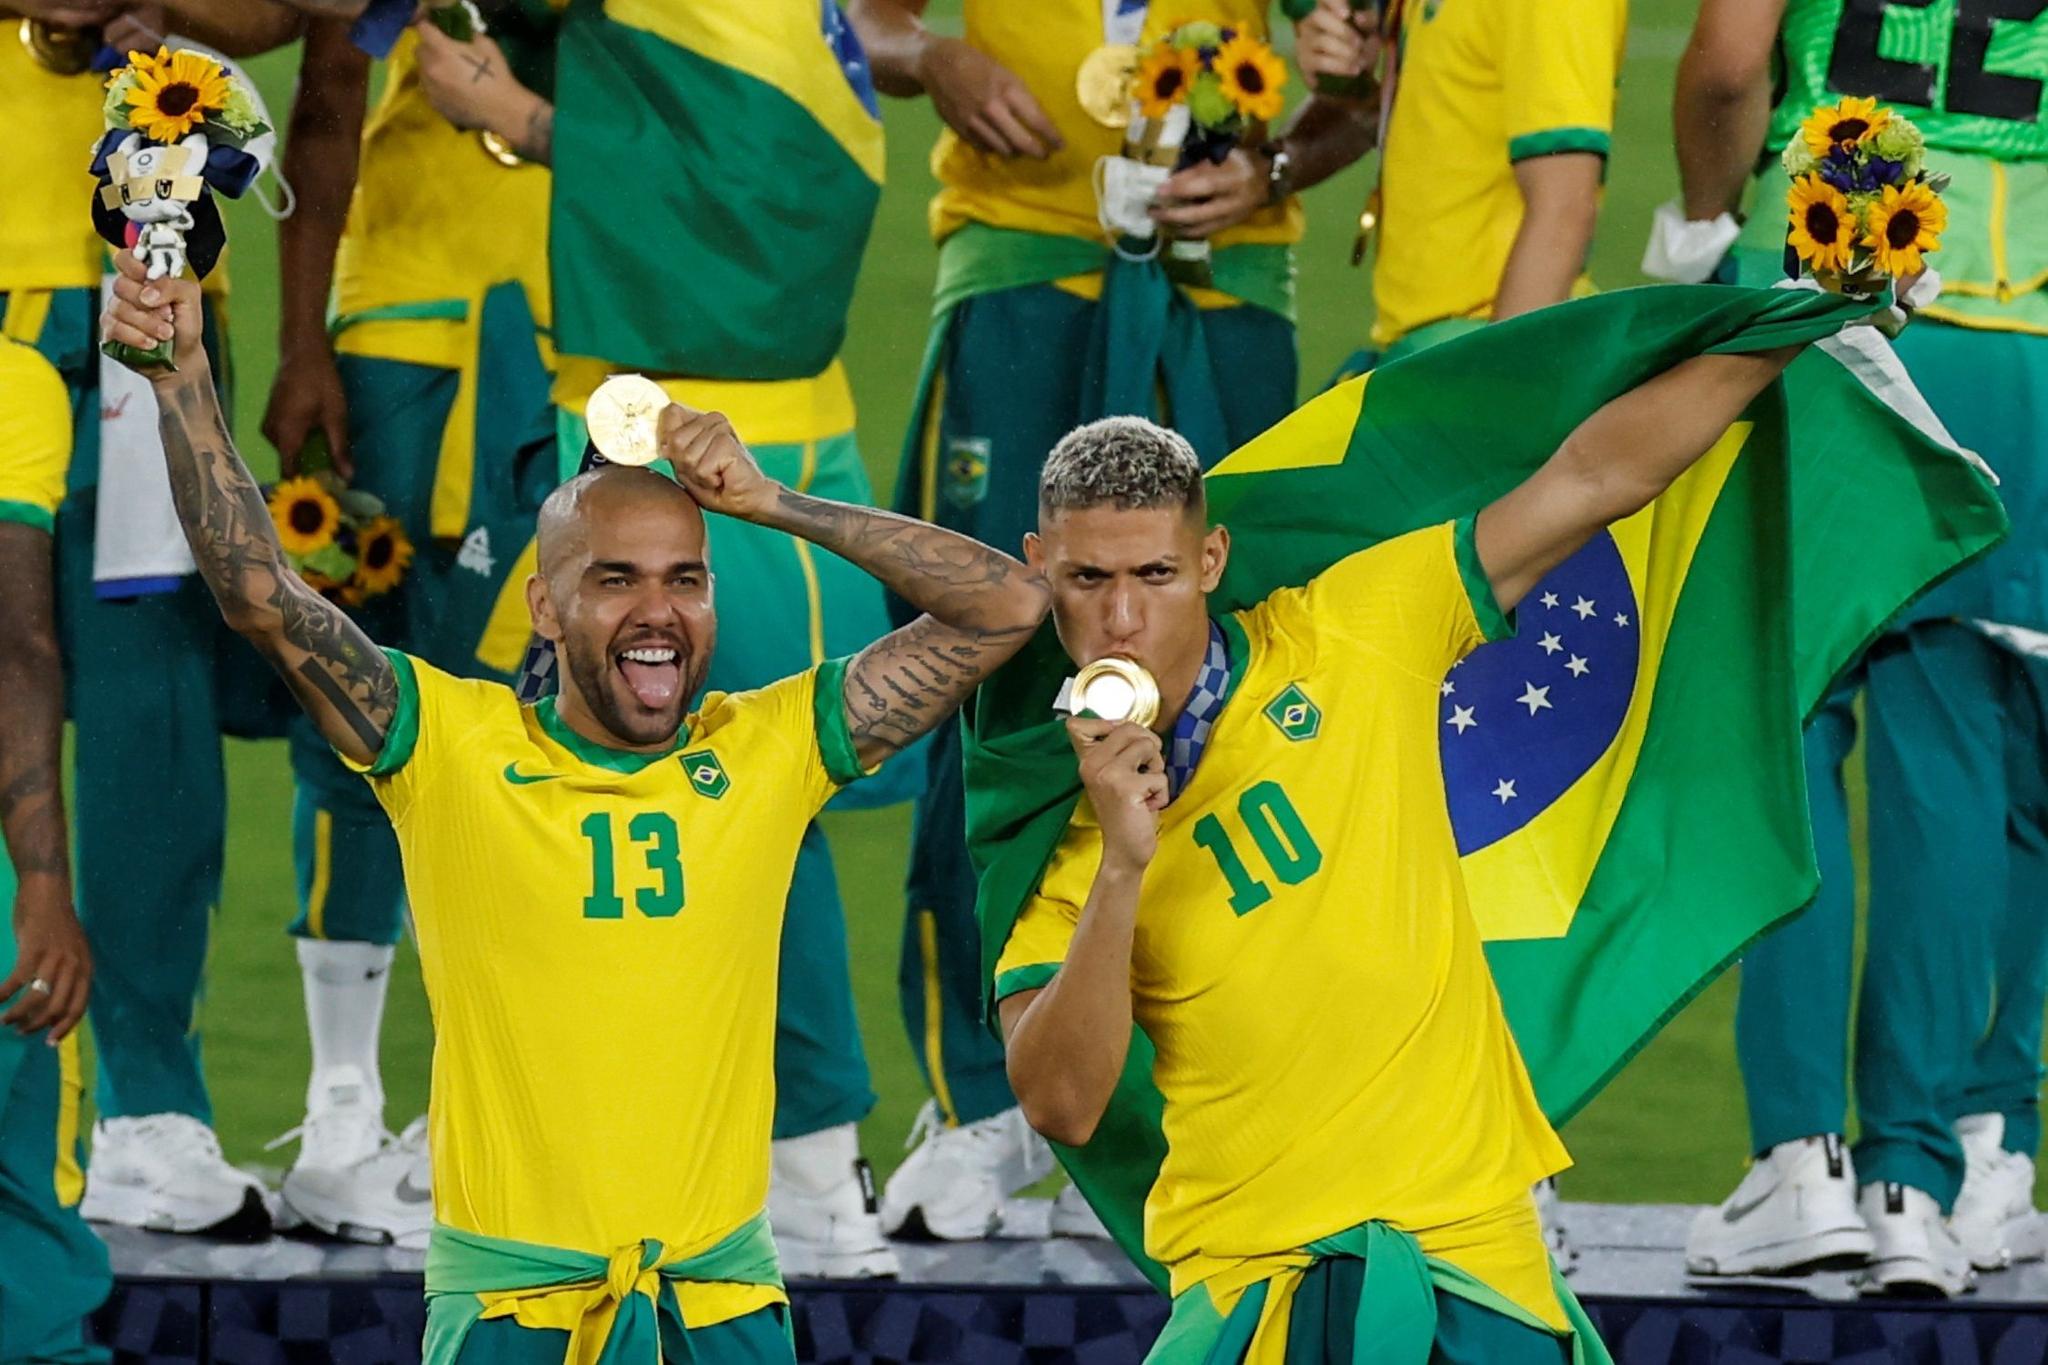 Brasileiros do futebol foram os únicos atletas em toda essa edição dos Jogos Olímpicos a desrespeitar as regras sobre o uso do agasalho de pódio. Daniel Alves defendeu a atitude no Instagram.